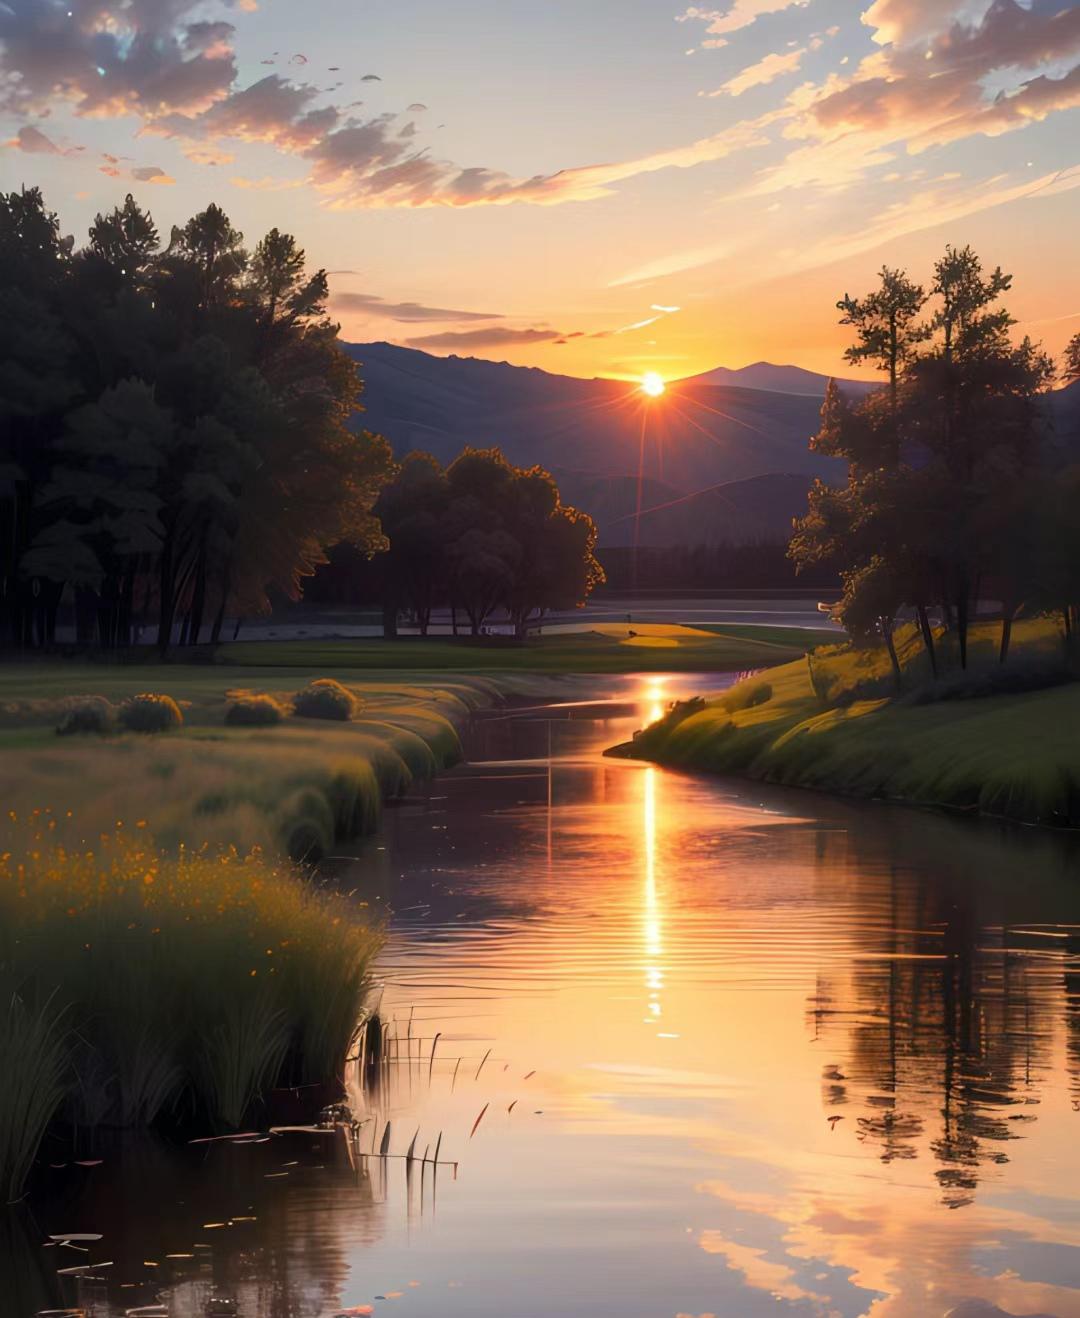 湖边美景 这是一个平静而美丽的夏日晚上,在湖面上倒映着夕阳的余晖